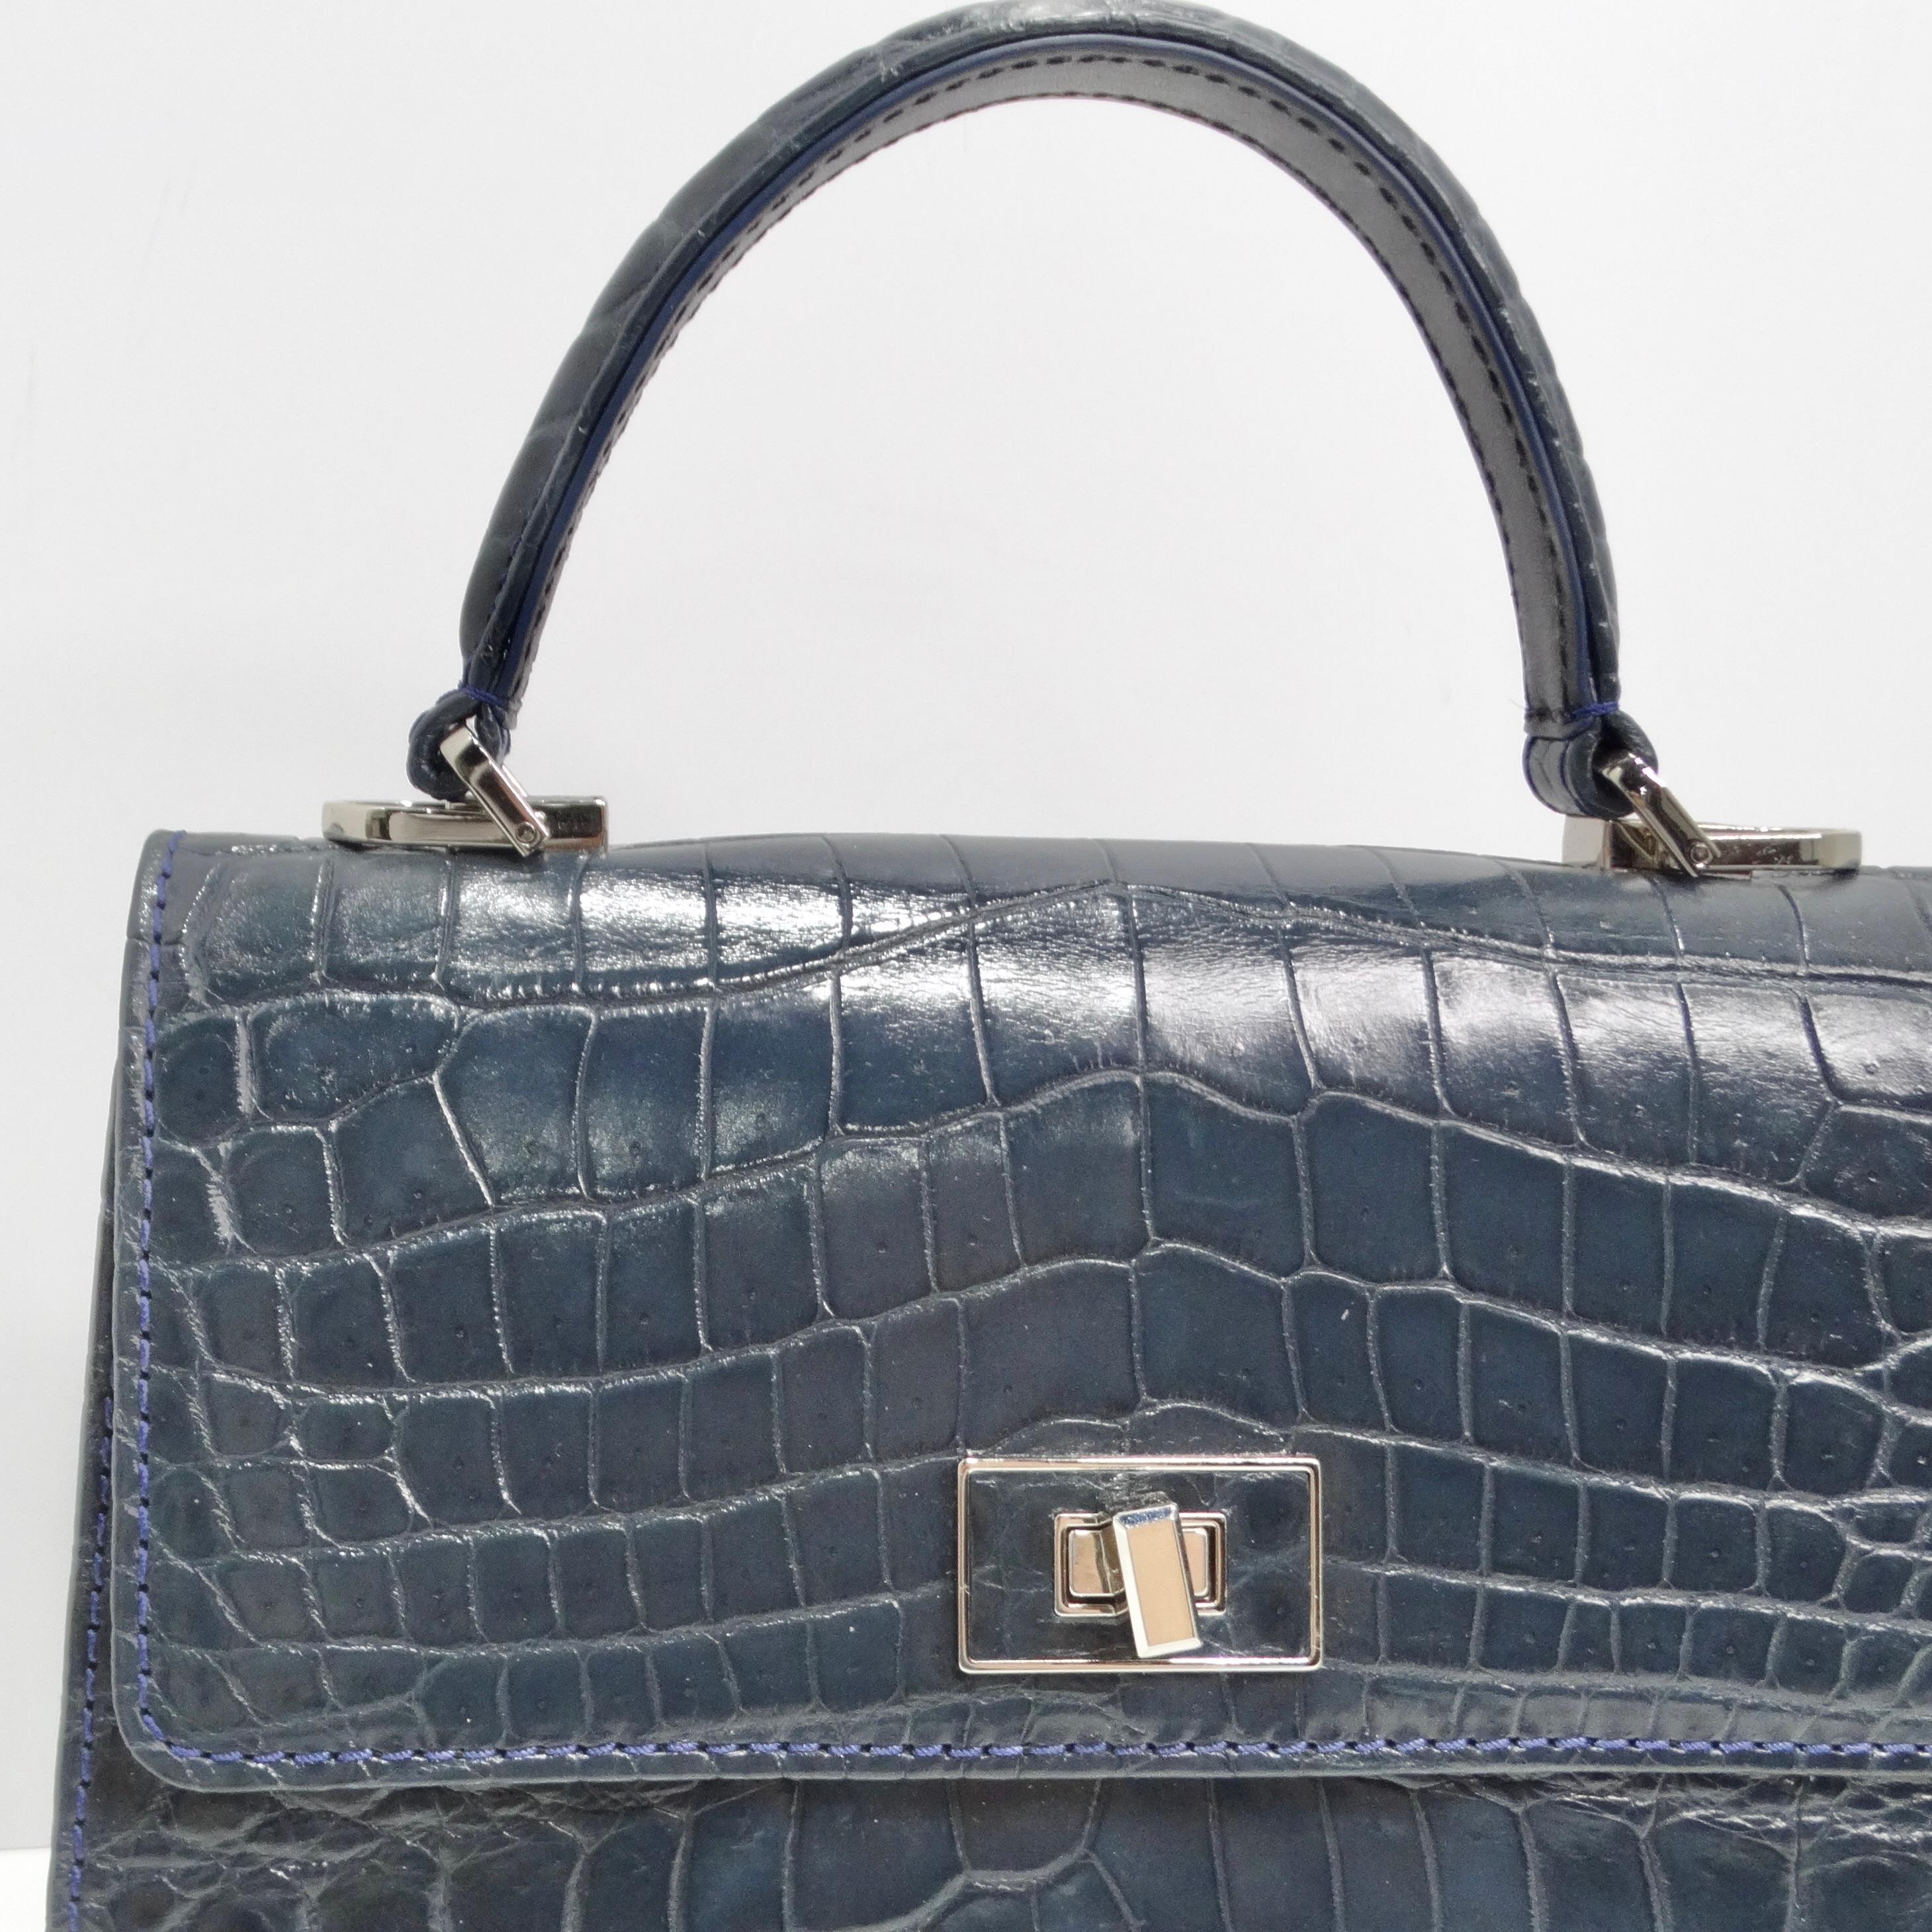 Die BC Luxury Blue Crocodile Leather Top Handle Bag ist ein umwerfendes Accessoire, das zeitlose Eleganz mit moderner Raffinesse verbindet. Diese strukturierte Henkeltasche aus luxuriösem navyblauem Krokodilleder wertet mit ihrer leuchtenden Farbe